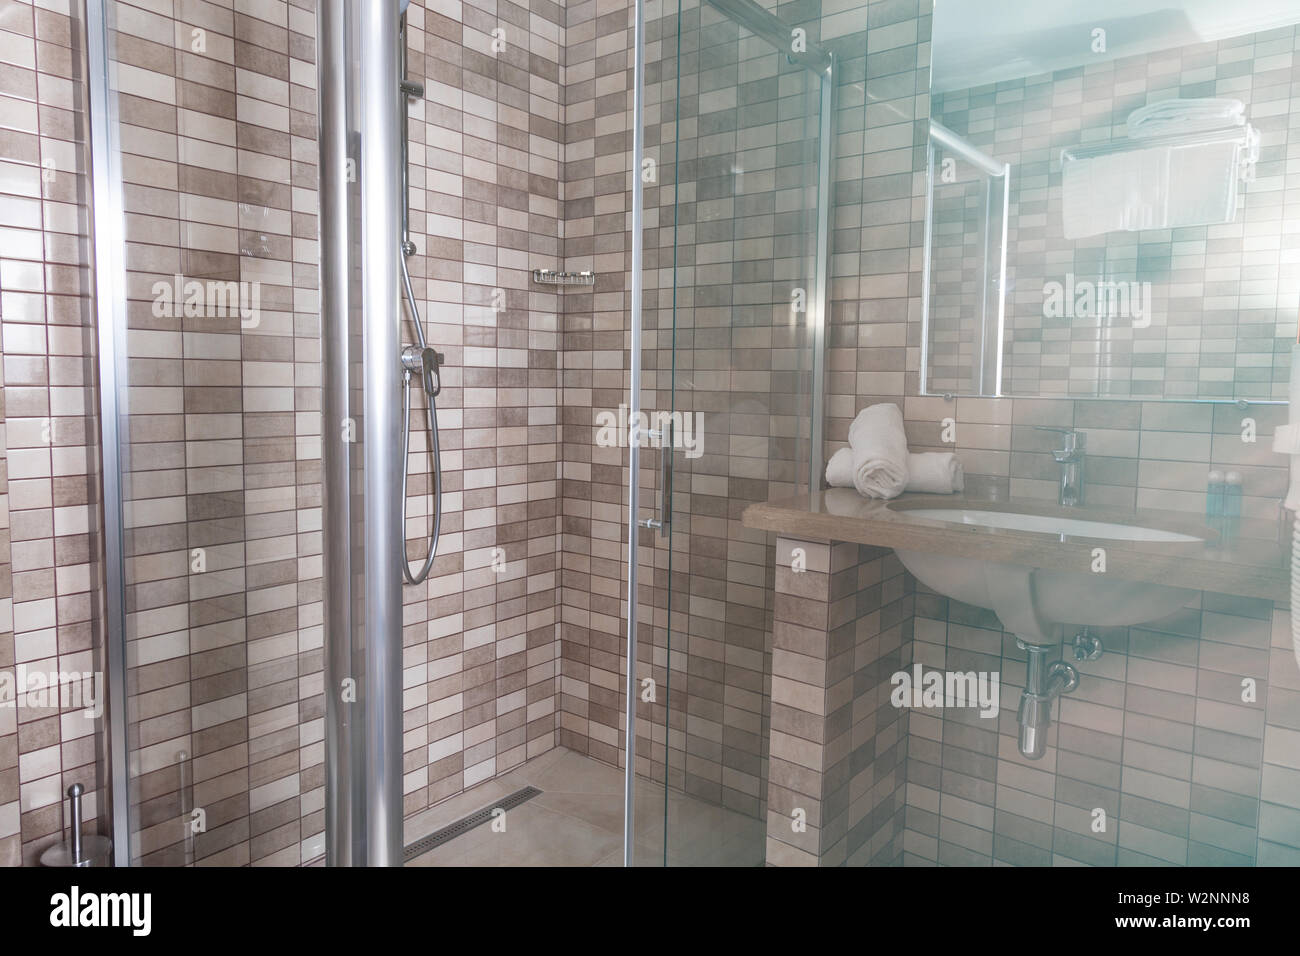 Cómoda habitación, baño, ducha, lavabo, azulejos de mosaico Foto de stock